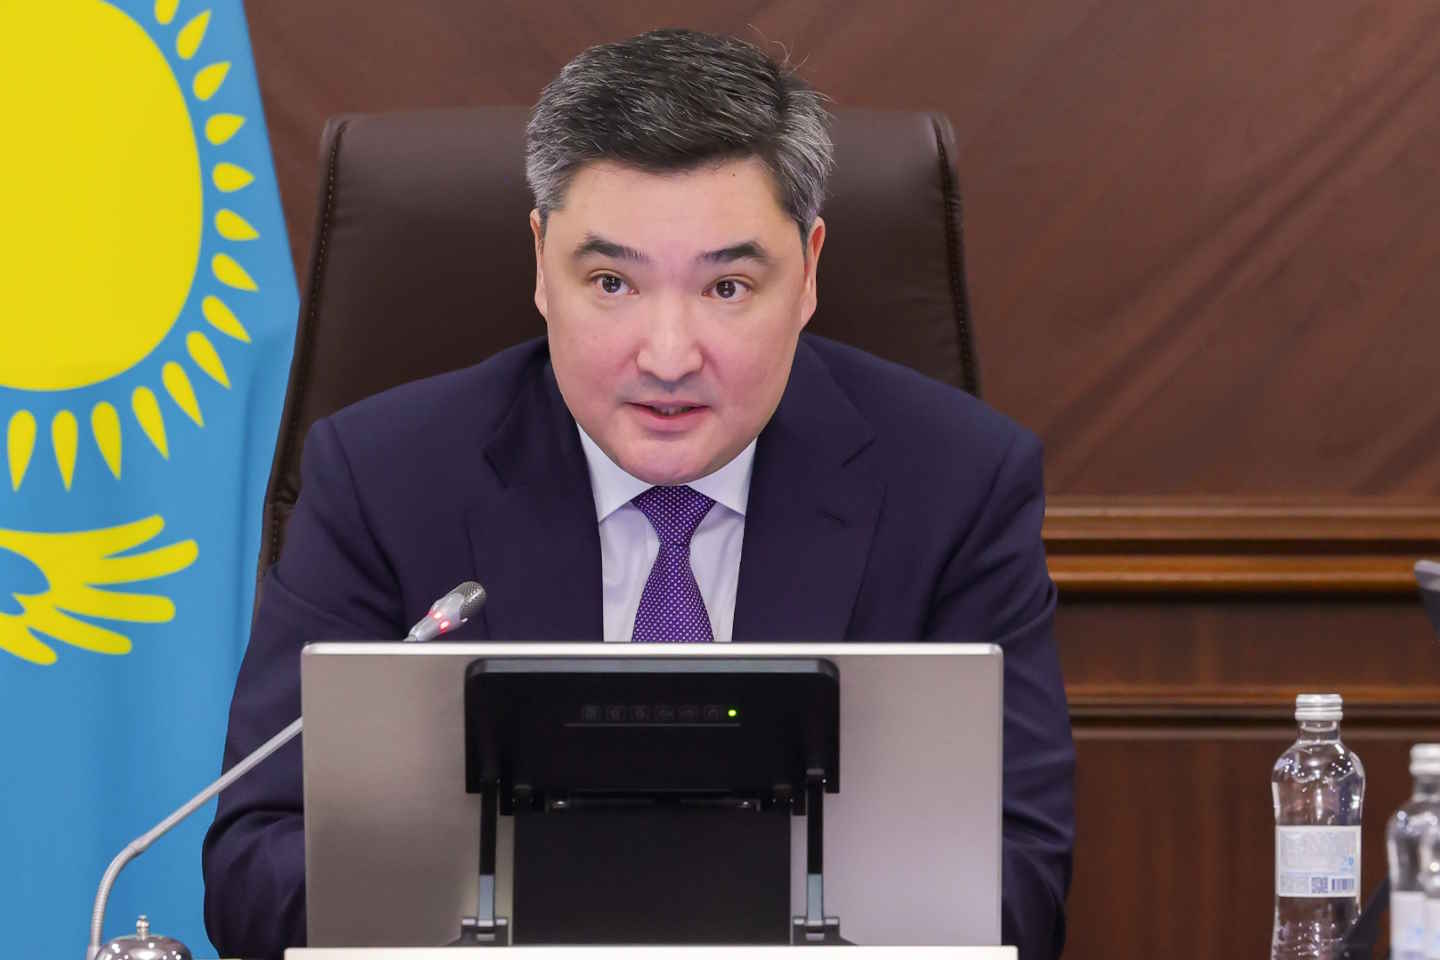 Новости Казахстана / Политика в Казахстане / Казахстану обещано правительство решительных действий